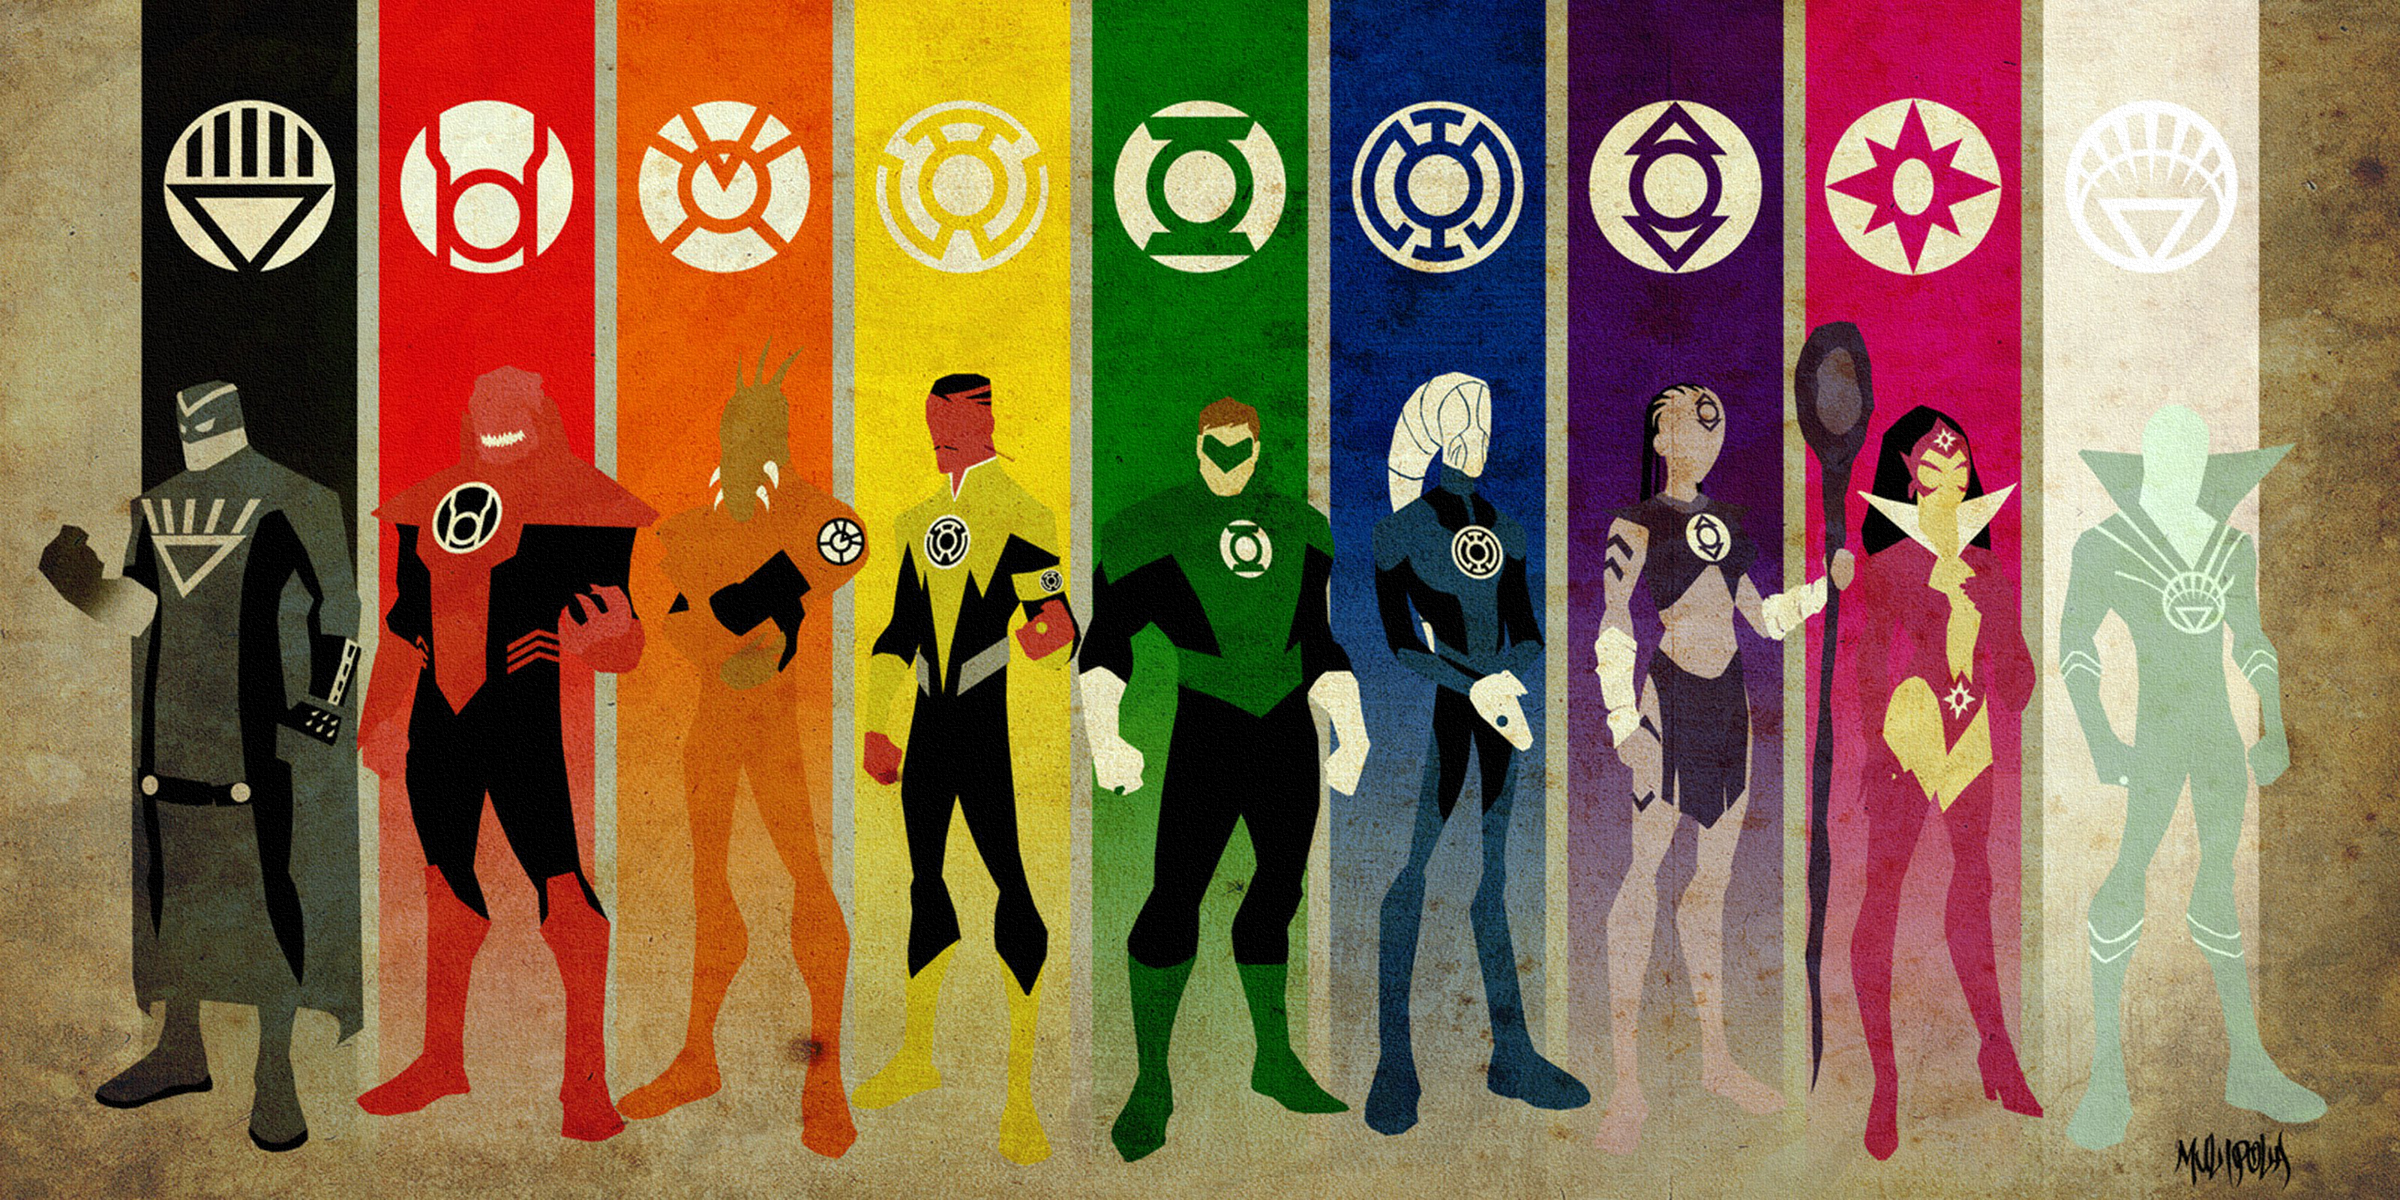 Зеленый Фонарь, DC Comics, корпуса Синестро, Звезда Sapphire, Красный фонарь корпуса, Синий фонарь, Племя Индиго - обои на рабочий стол